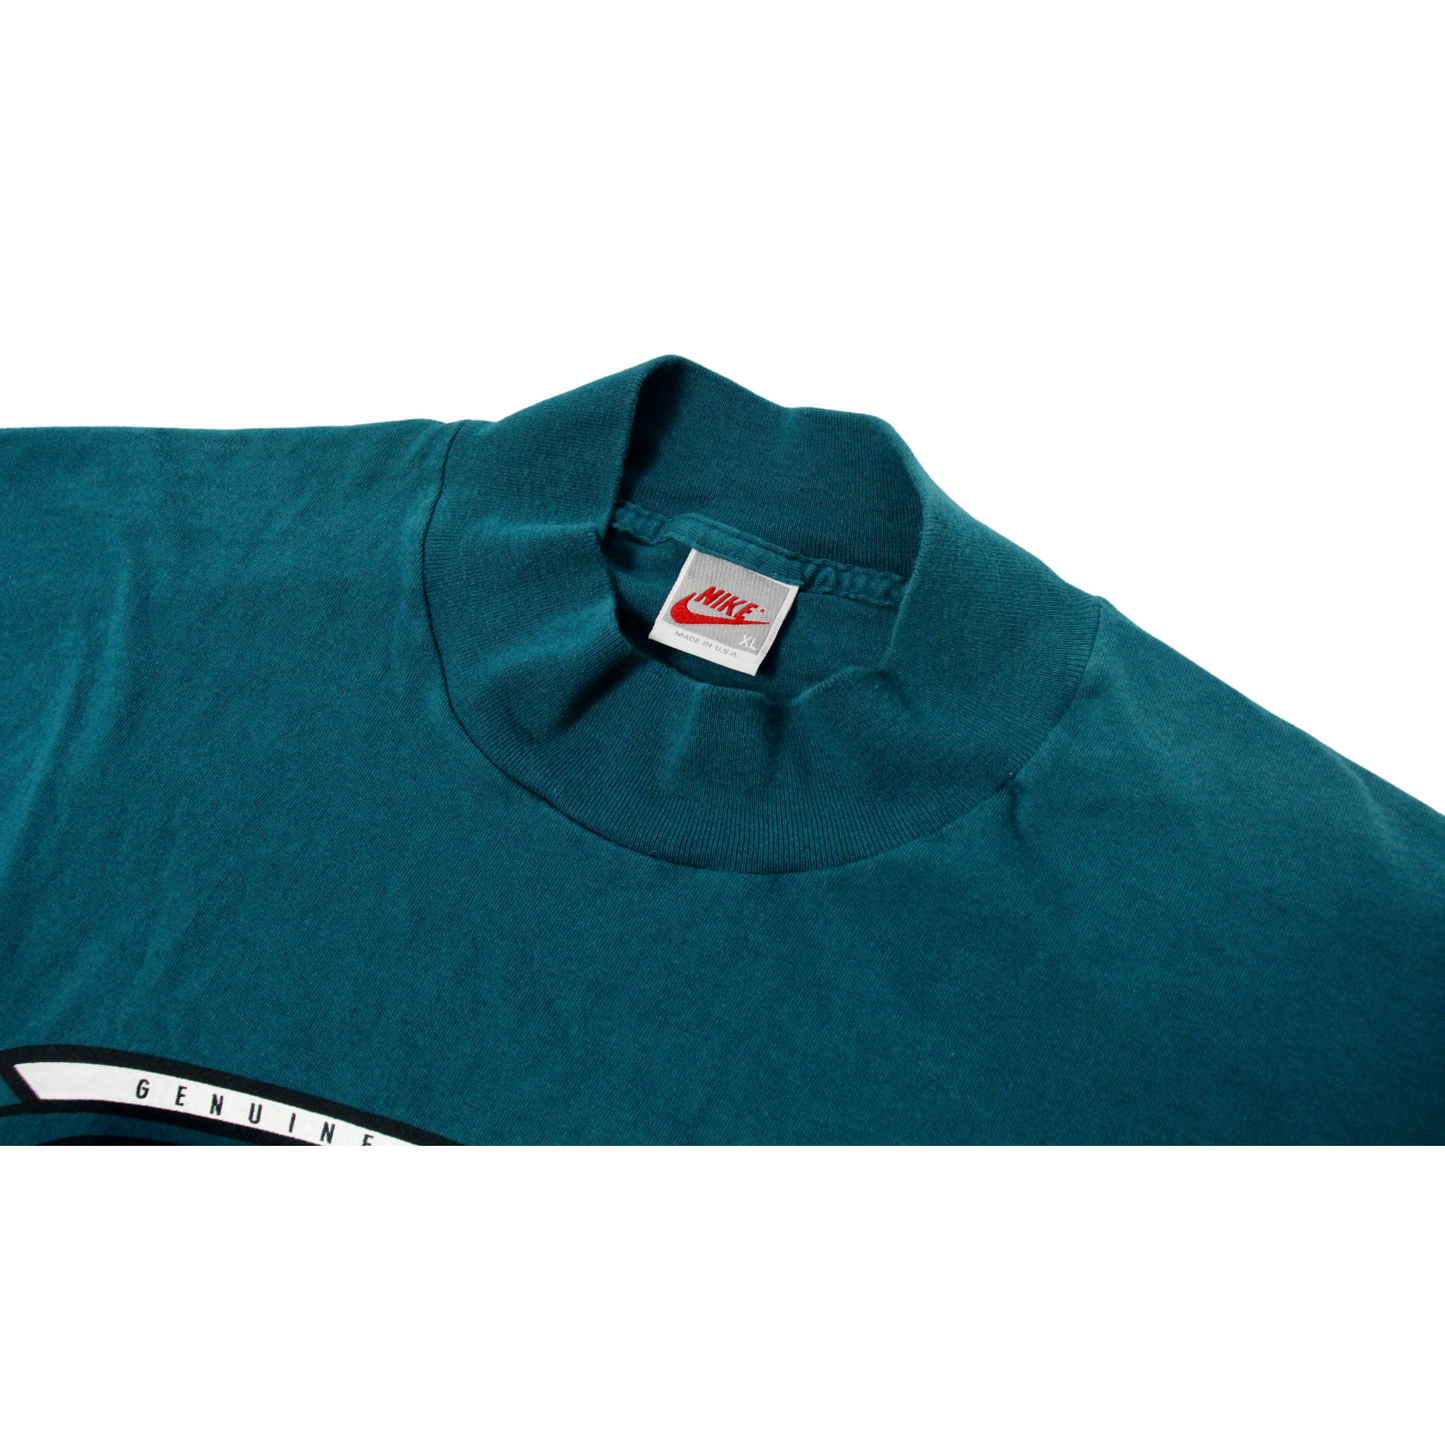 Vintage Nike Mock Neck Long Sleeve T-Shirt (Turquoise)